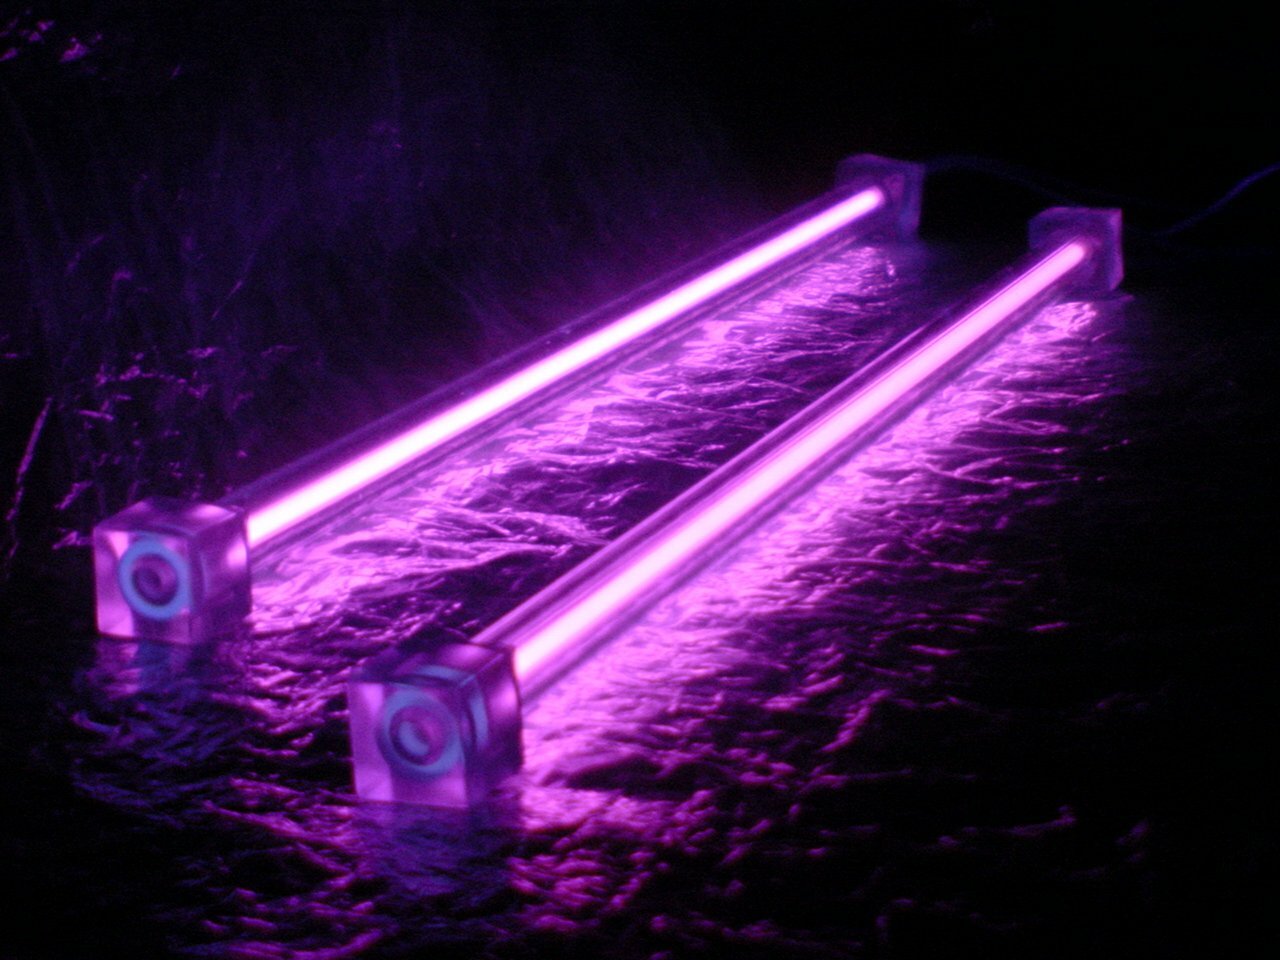 UV LED Market